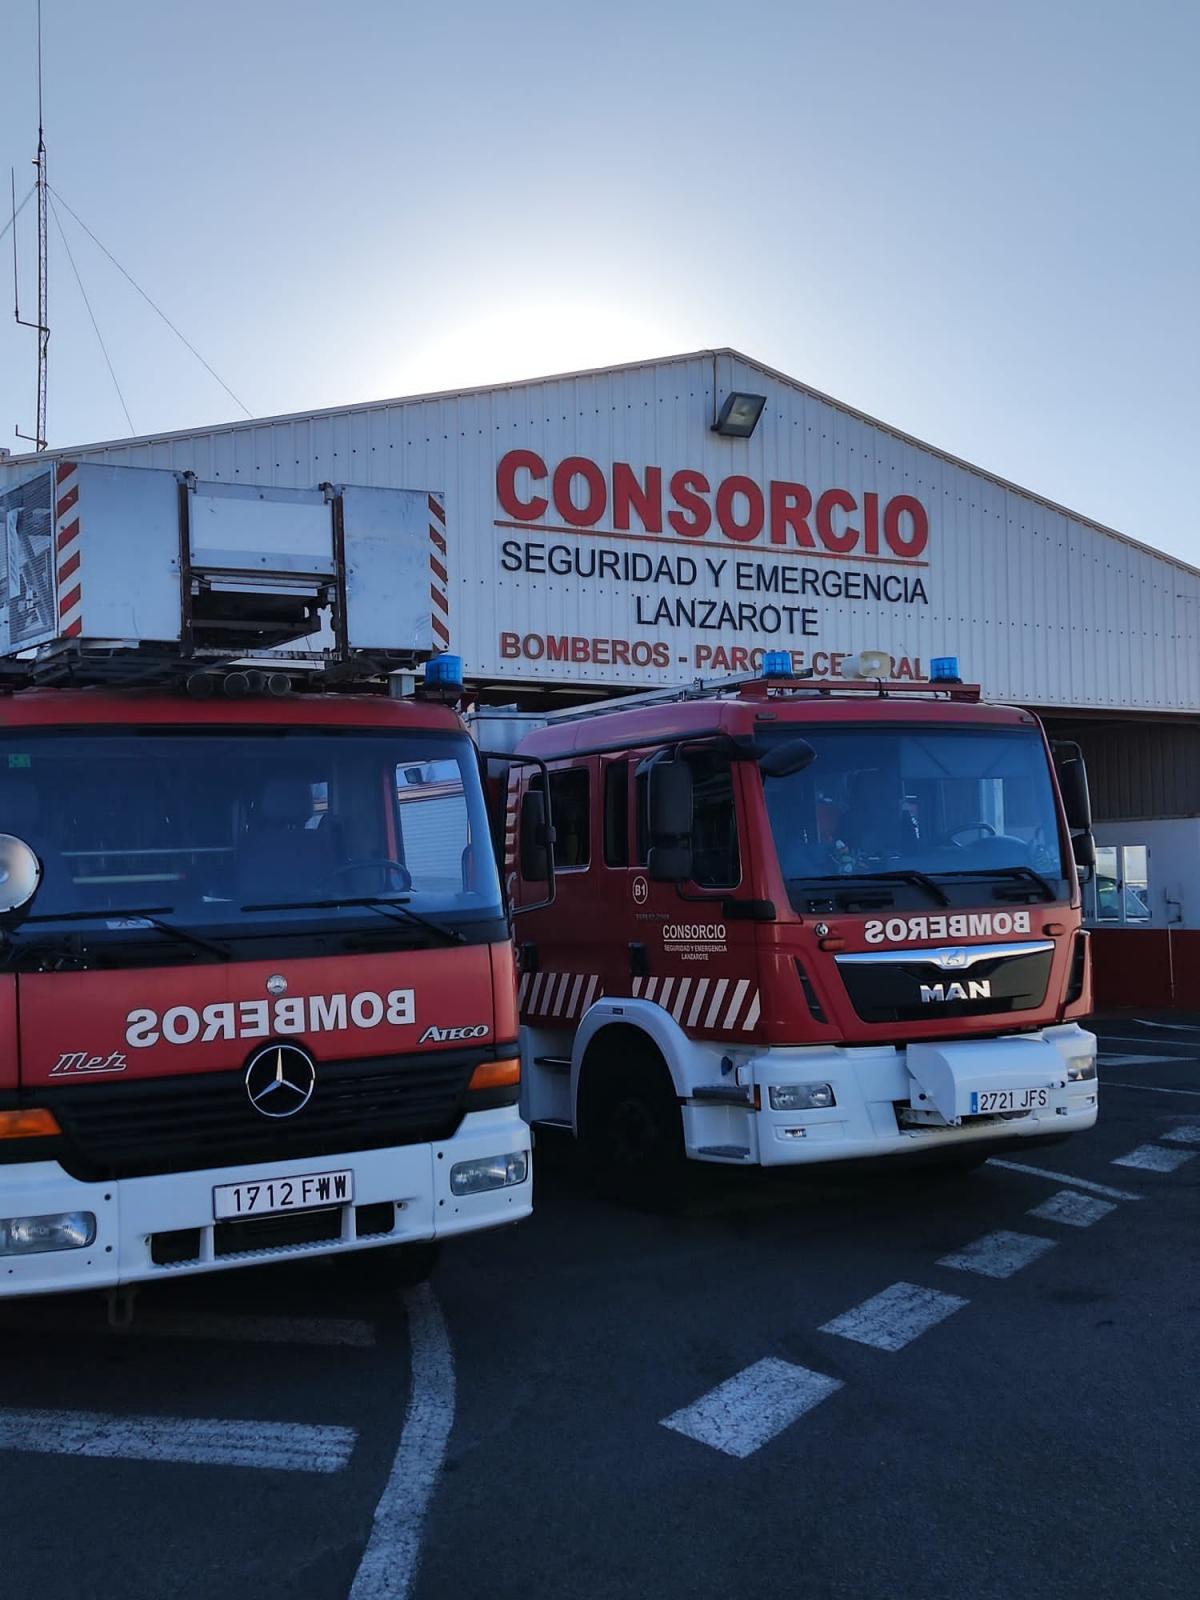 Consorcio Seguridad y Emergencia Lanzarote